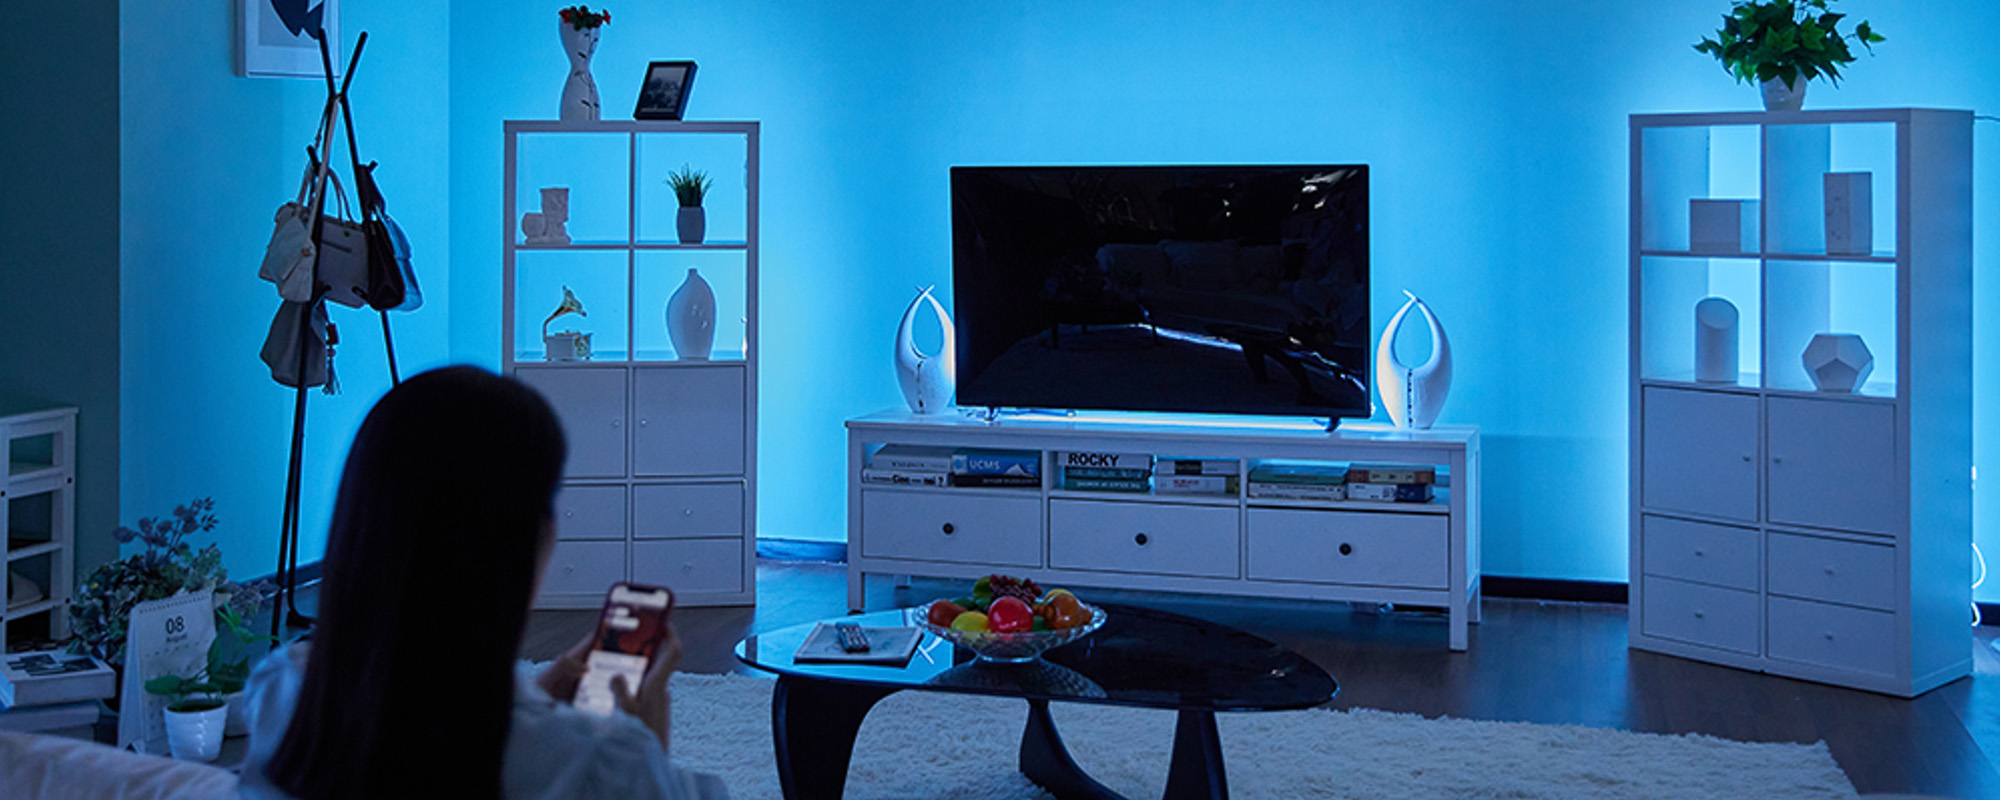 niebieskie podświetlenie ściany za szafkami i tv